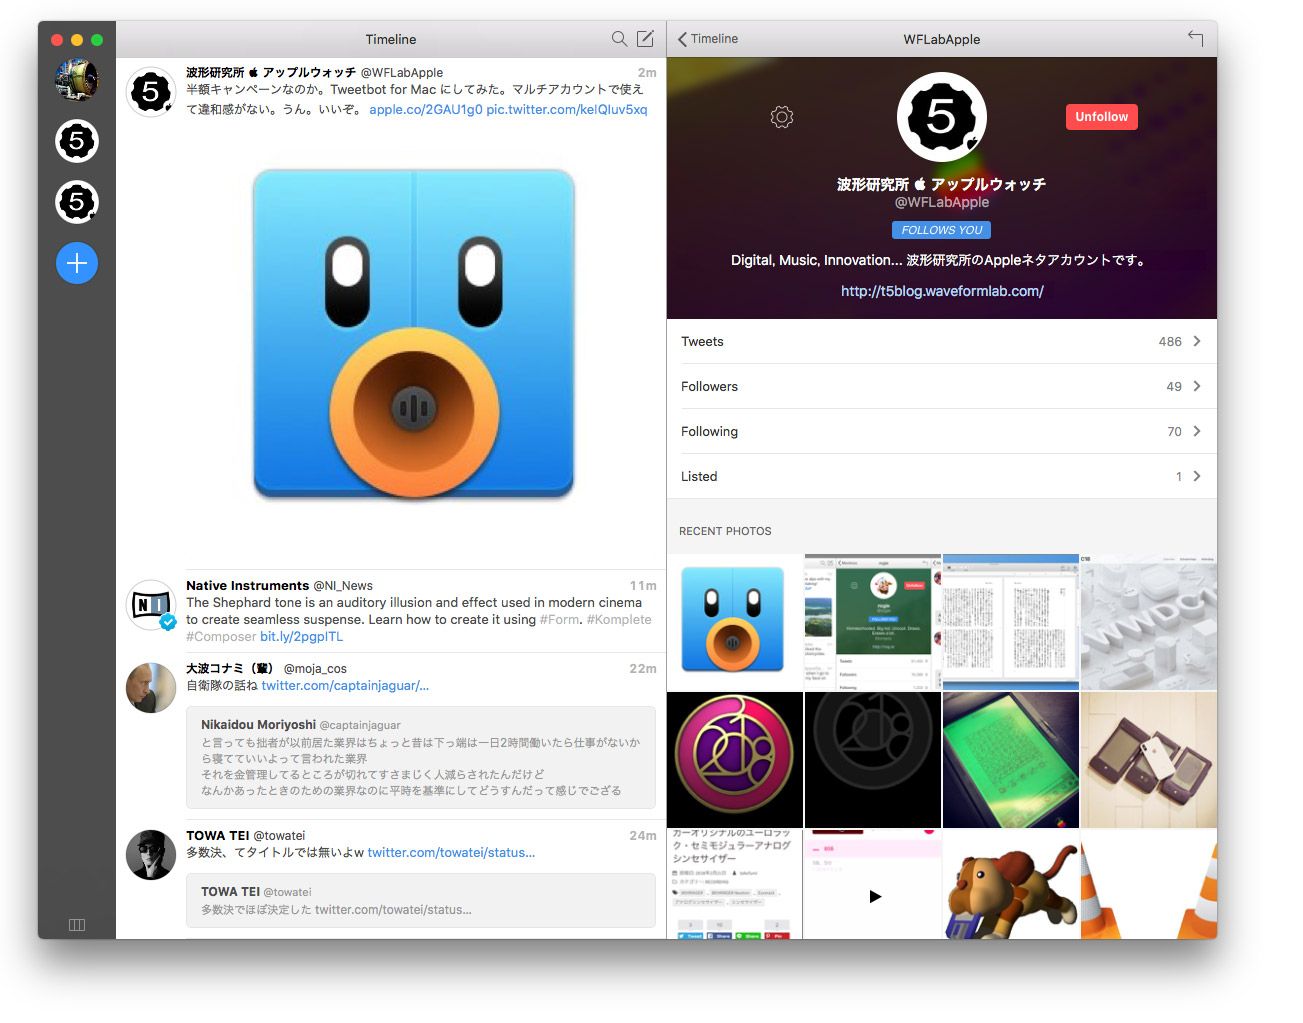 Tweetbot for Twitter - Mac の Twitter アプリはマルチアカウント対応のこれにしました